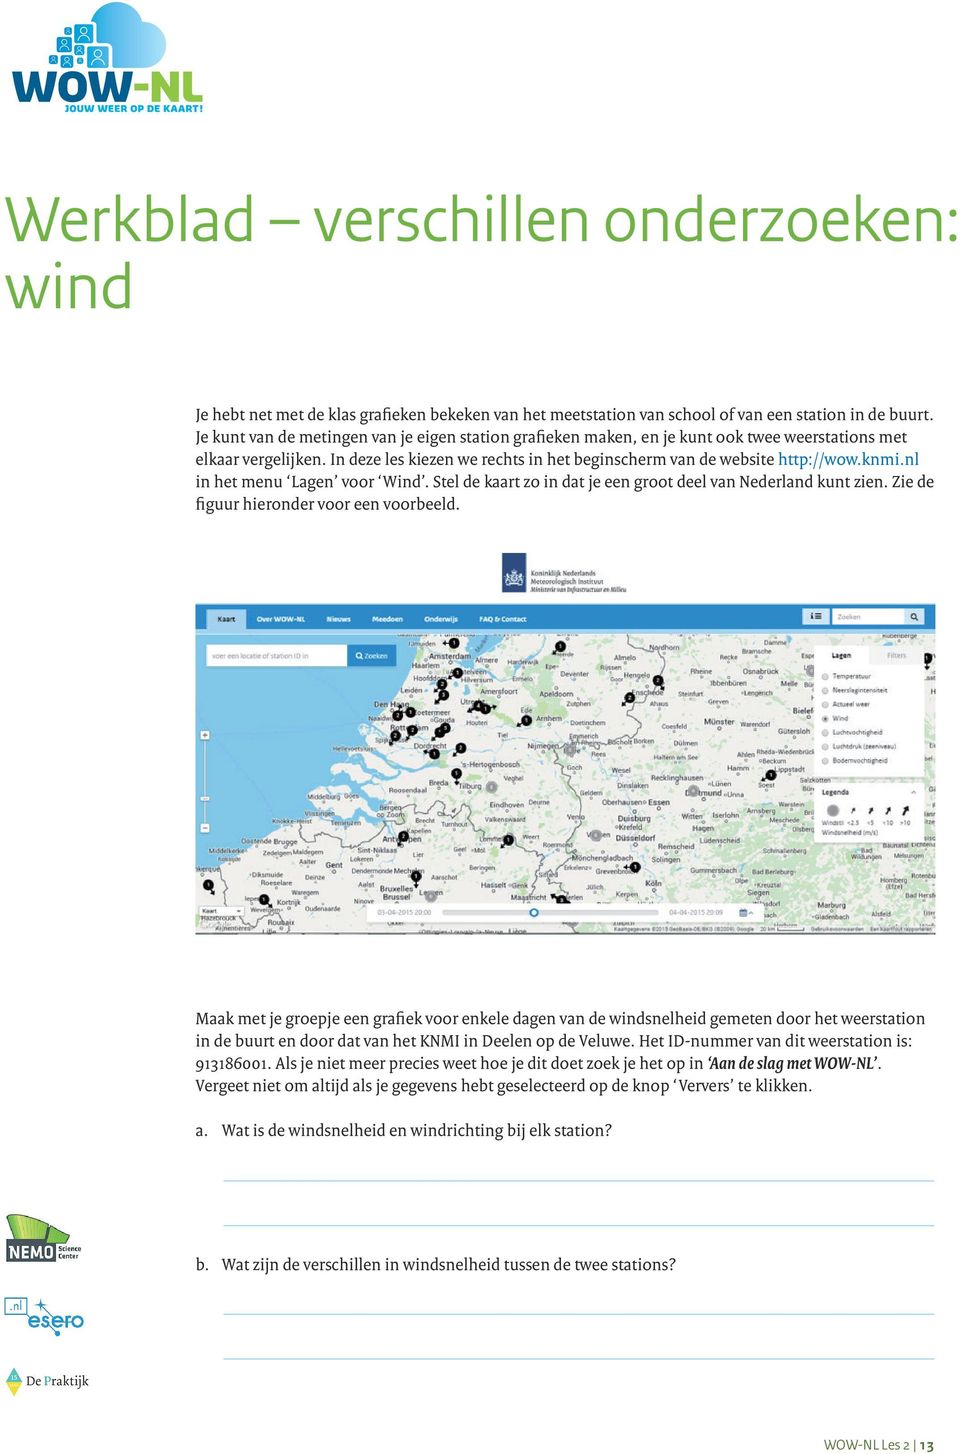 nl in het menu Lagen voor Wind. Stel de kaart zo in dat je een groot deel van Nederland kunt zien. Zie de figuur hieronder voor een voorbeeld.